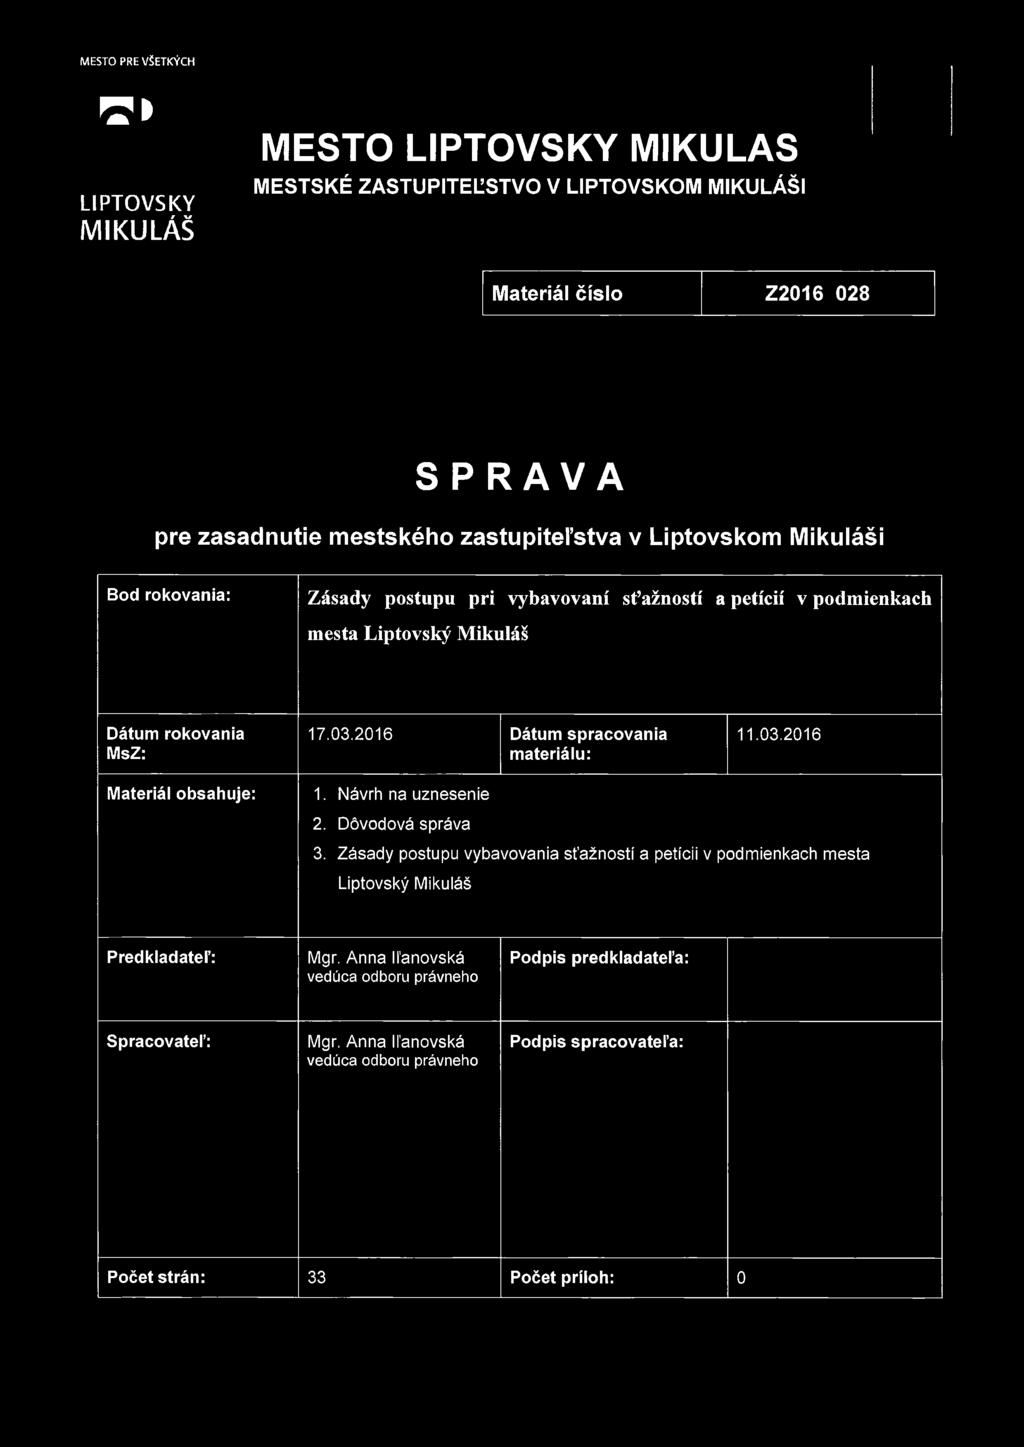 Zásady postupu vybavovania sťažností a petícií v podmienkach města Liptovský Mikuláš